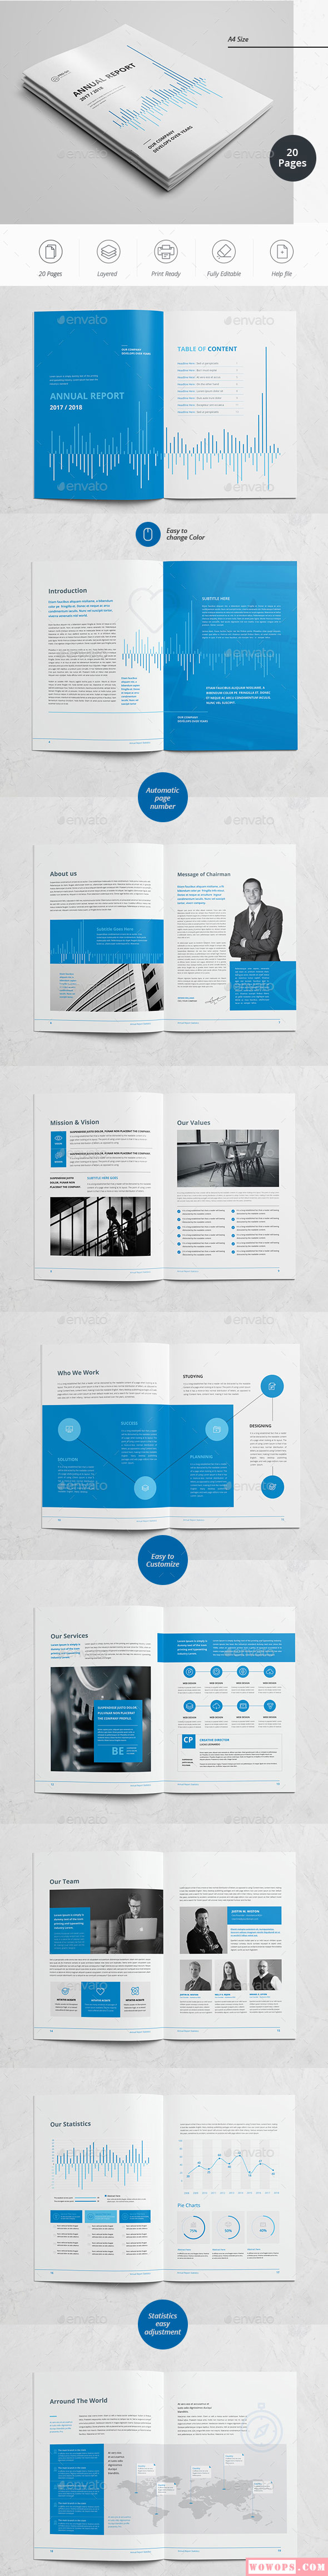 蓝色商务公司通用年度报告画册设计